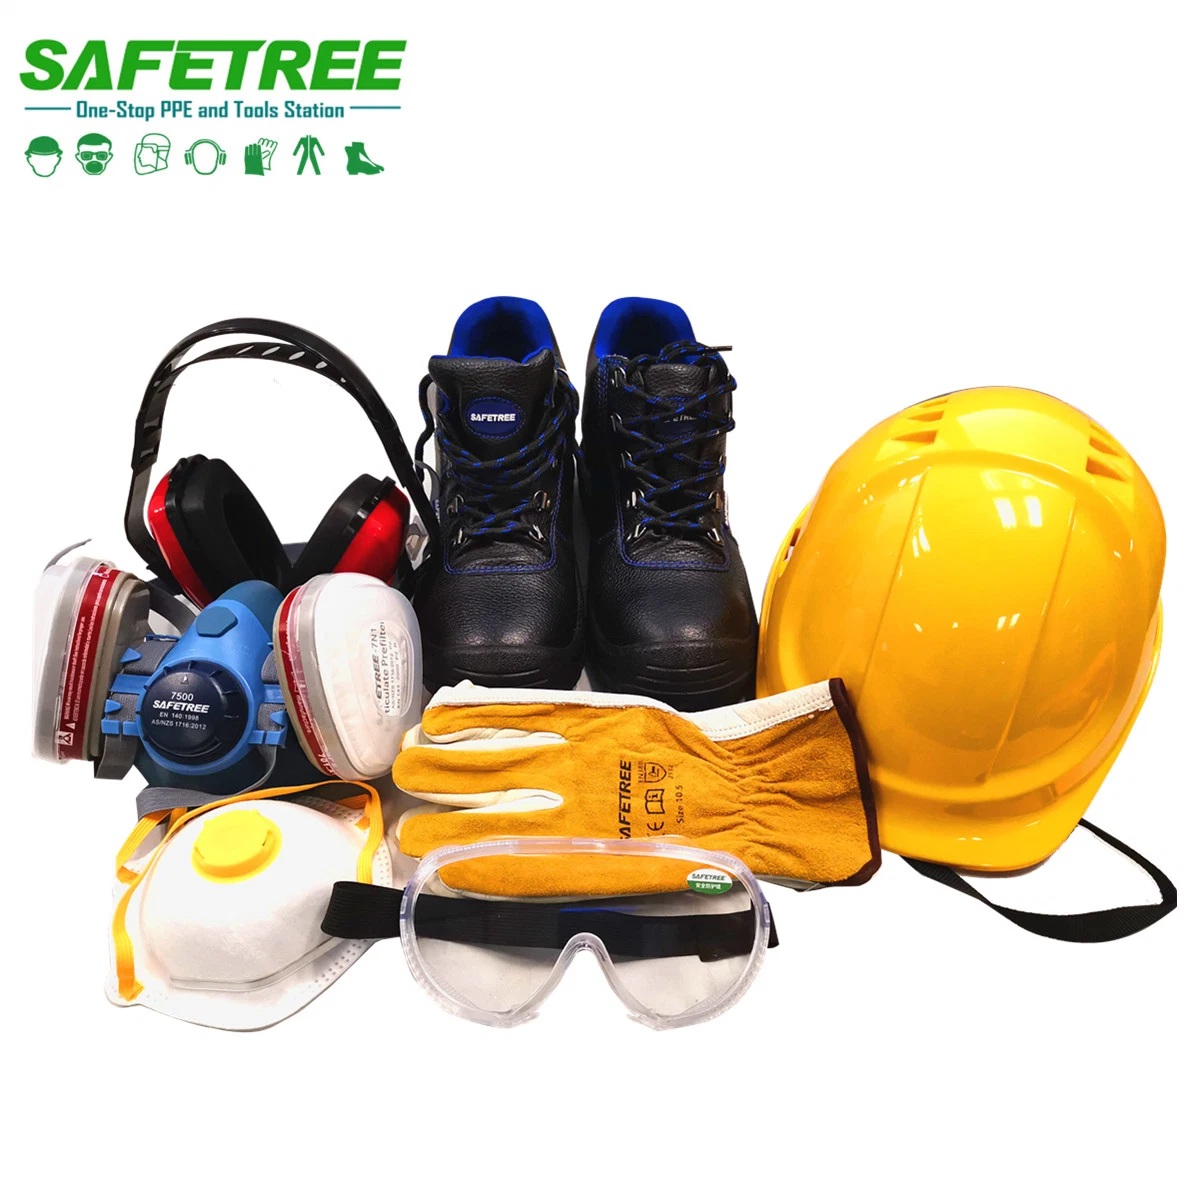 Persönliche Schutzausrüstung PSA Sicherheitsausrüstung für Bau, Bergbau, Elektrizität